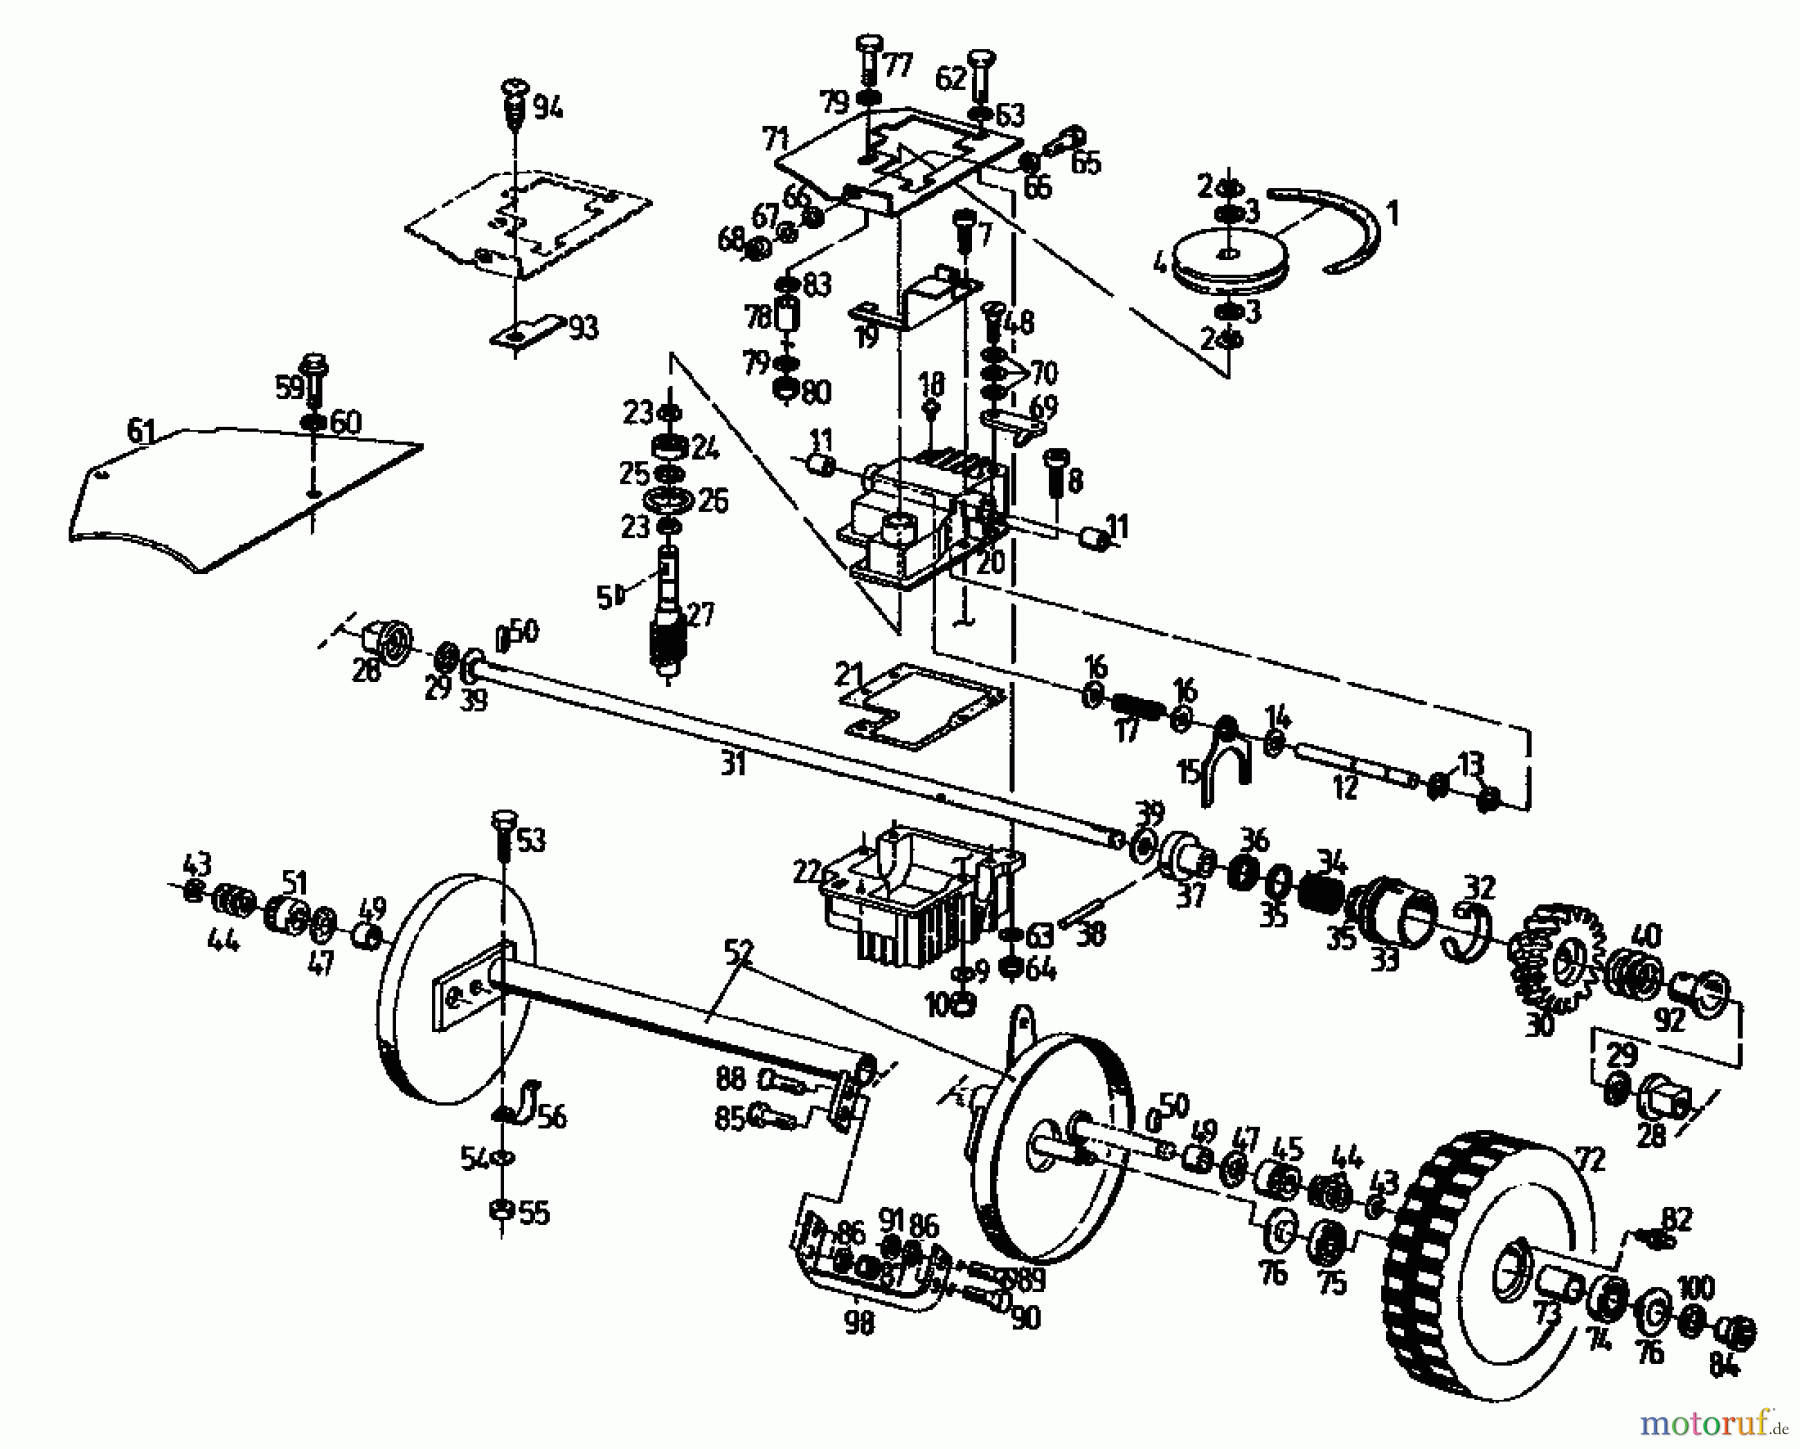  Gutbrod Motormäher mit Antrieb MH 534 PR 04017.03  (1994) Getriebe, Räder